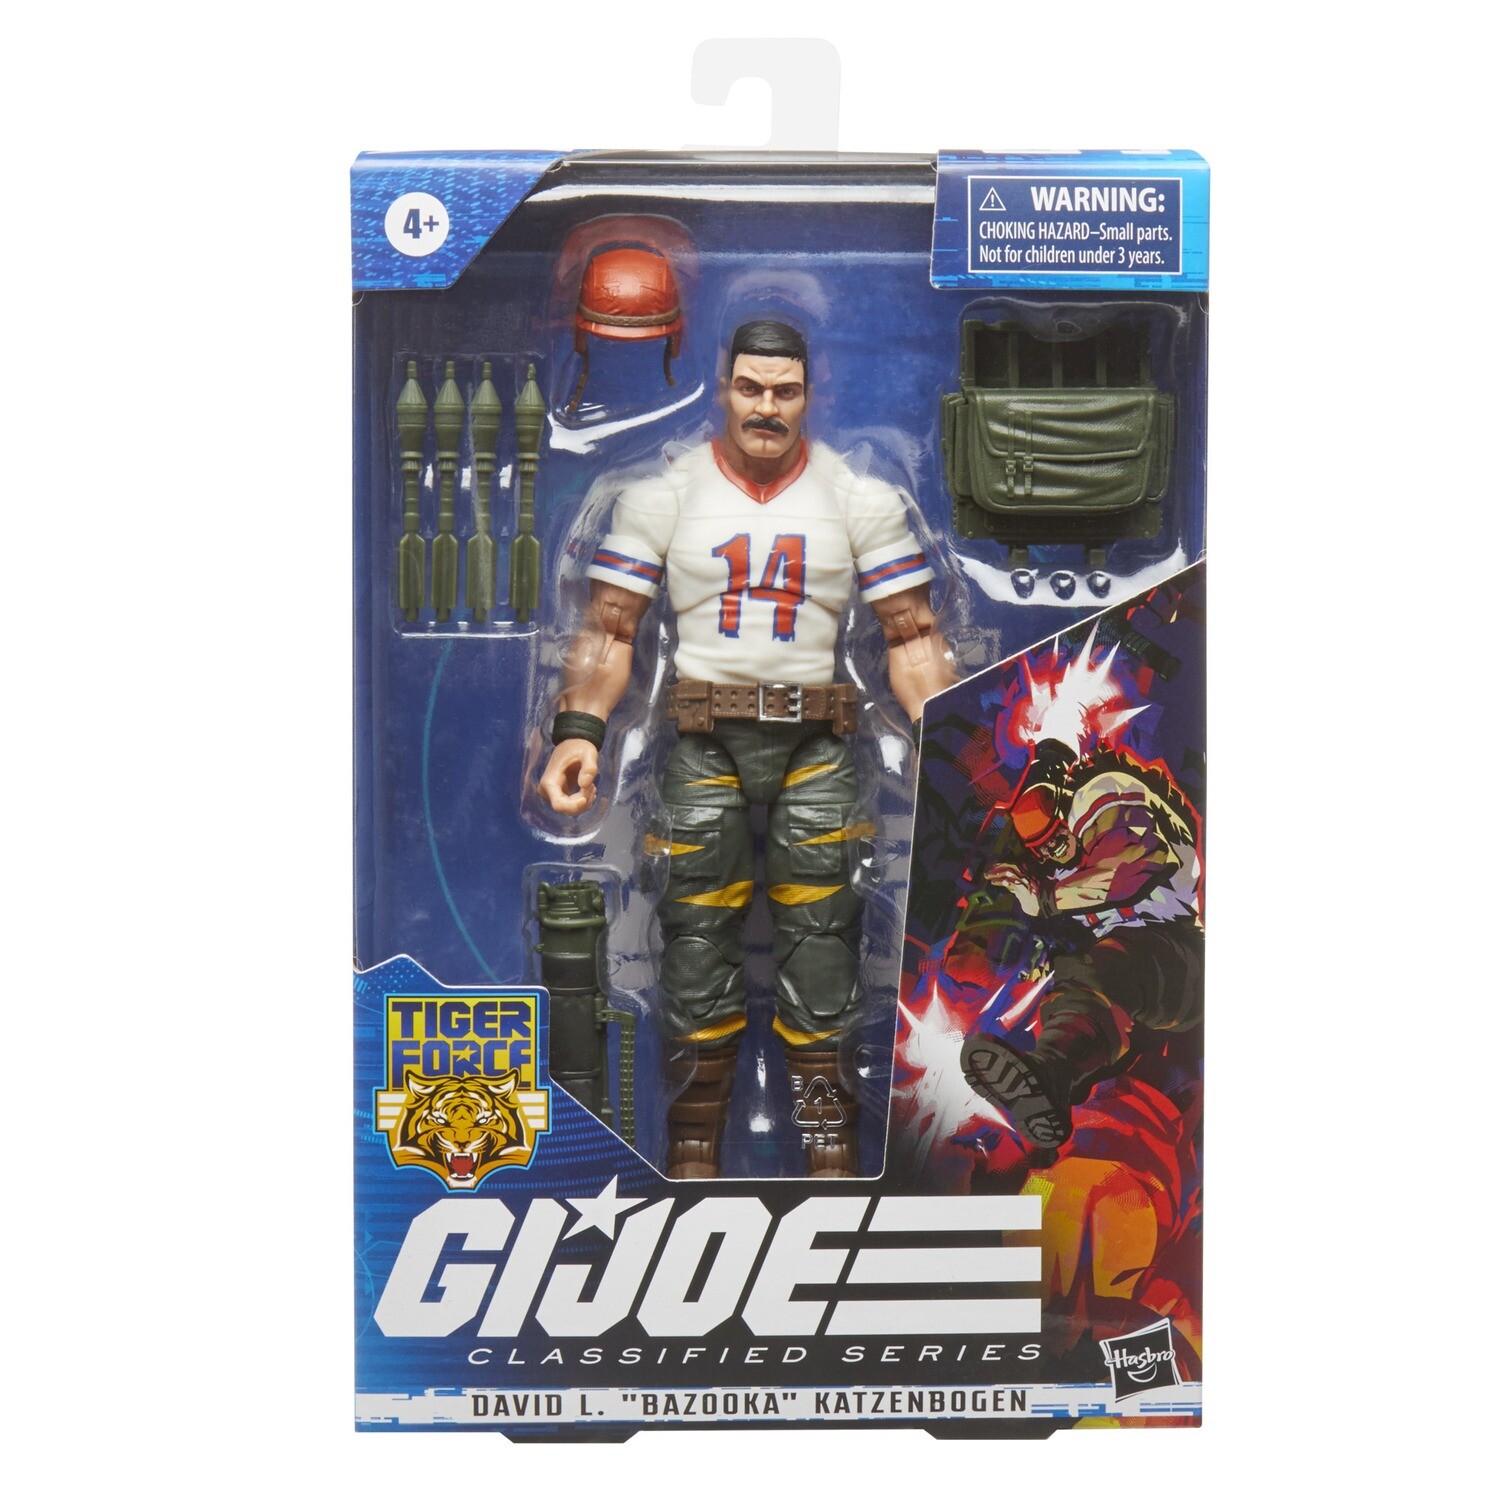 G.I. Joe Classified Series Tiger Force David L. “Bazooka” Katzenbogen Figure [in stock]